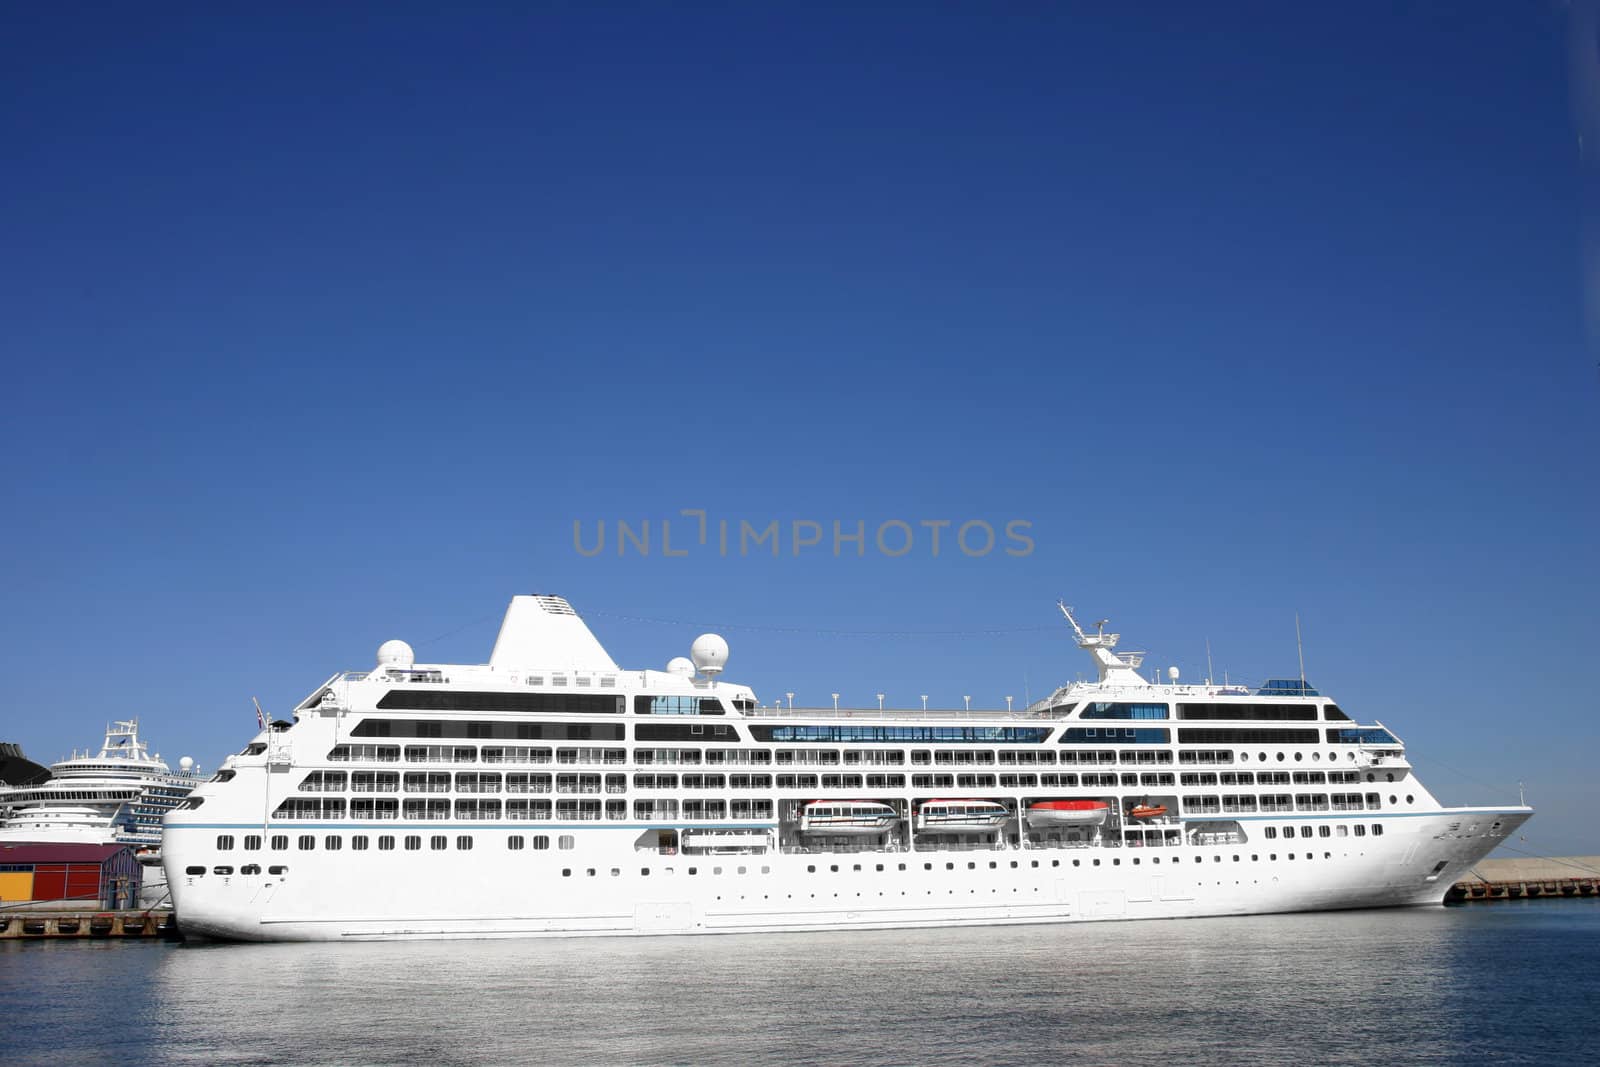 Ship white, passenger, in port